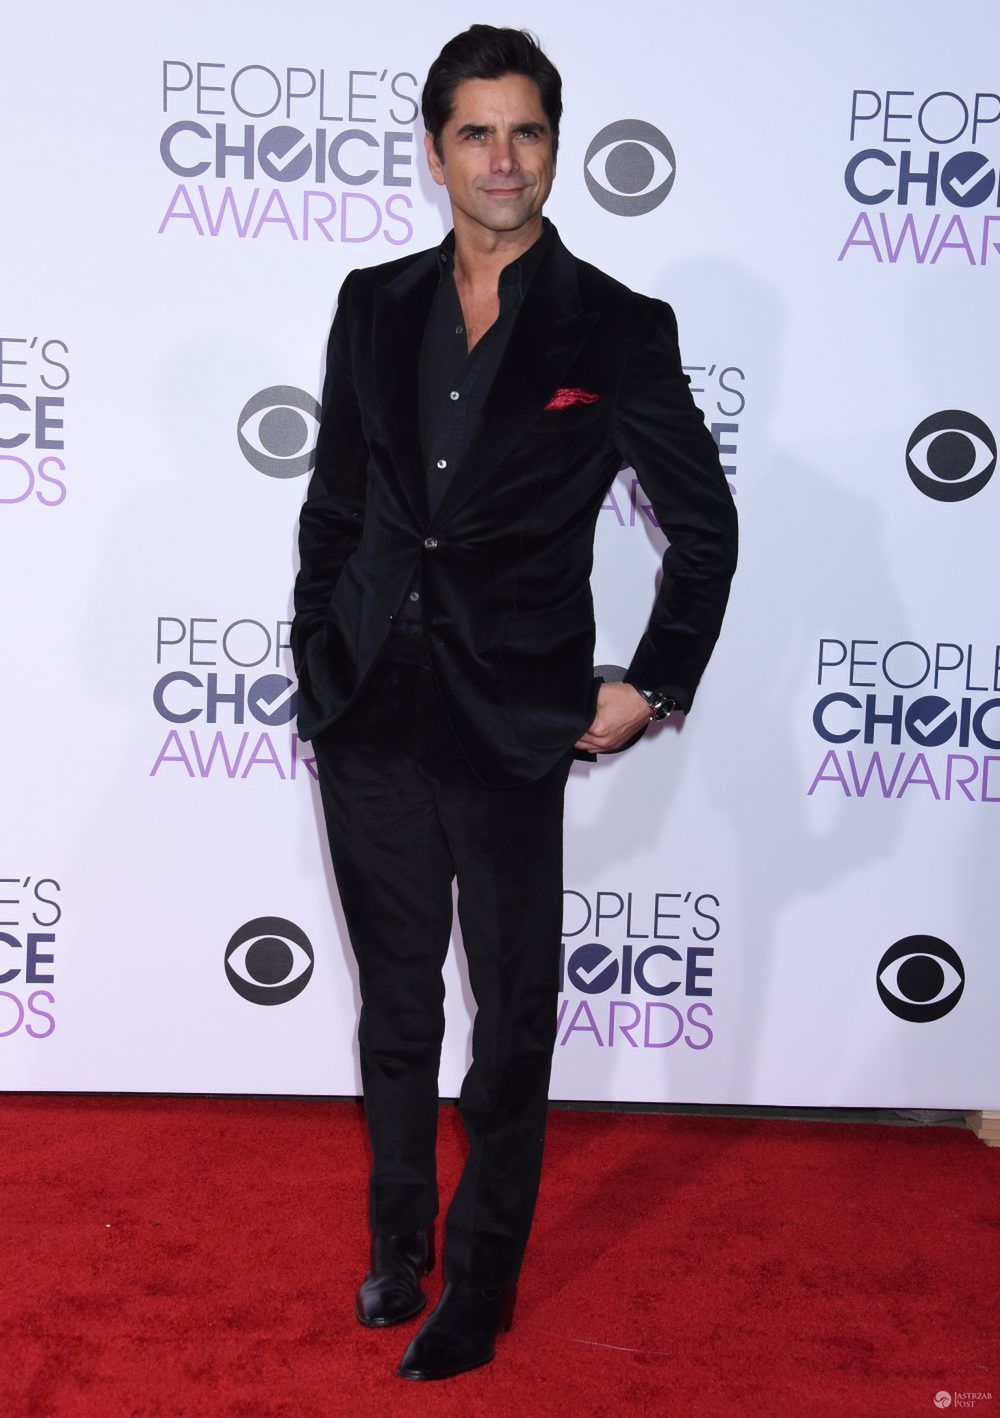 John Stamos-
People's Choice Awards 2016